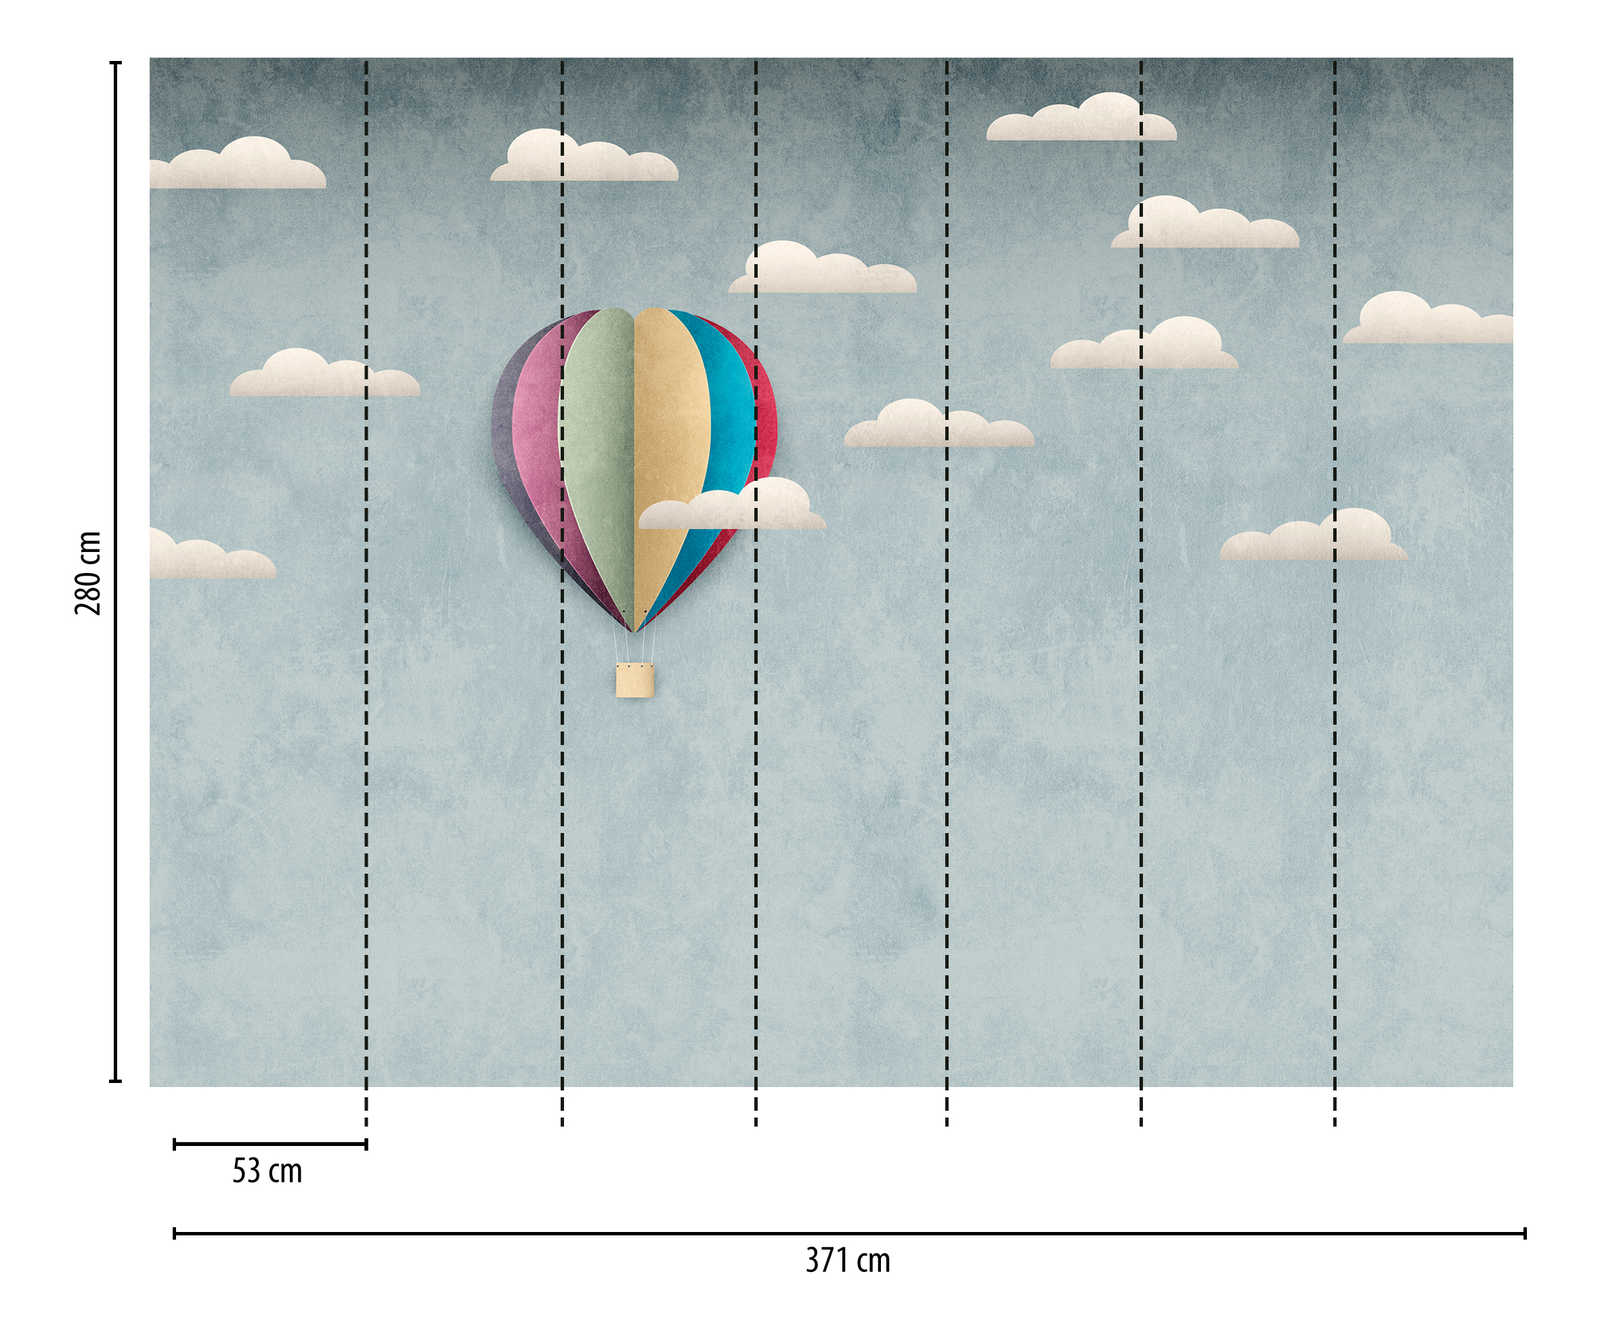             Wallpaper novelty | motif wallpaper hot air balloon & cloudy sky for kids
        